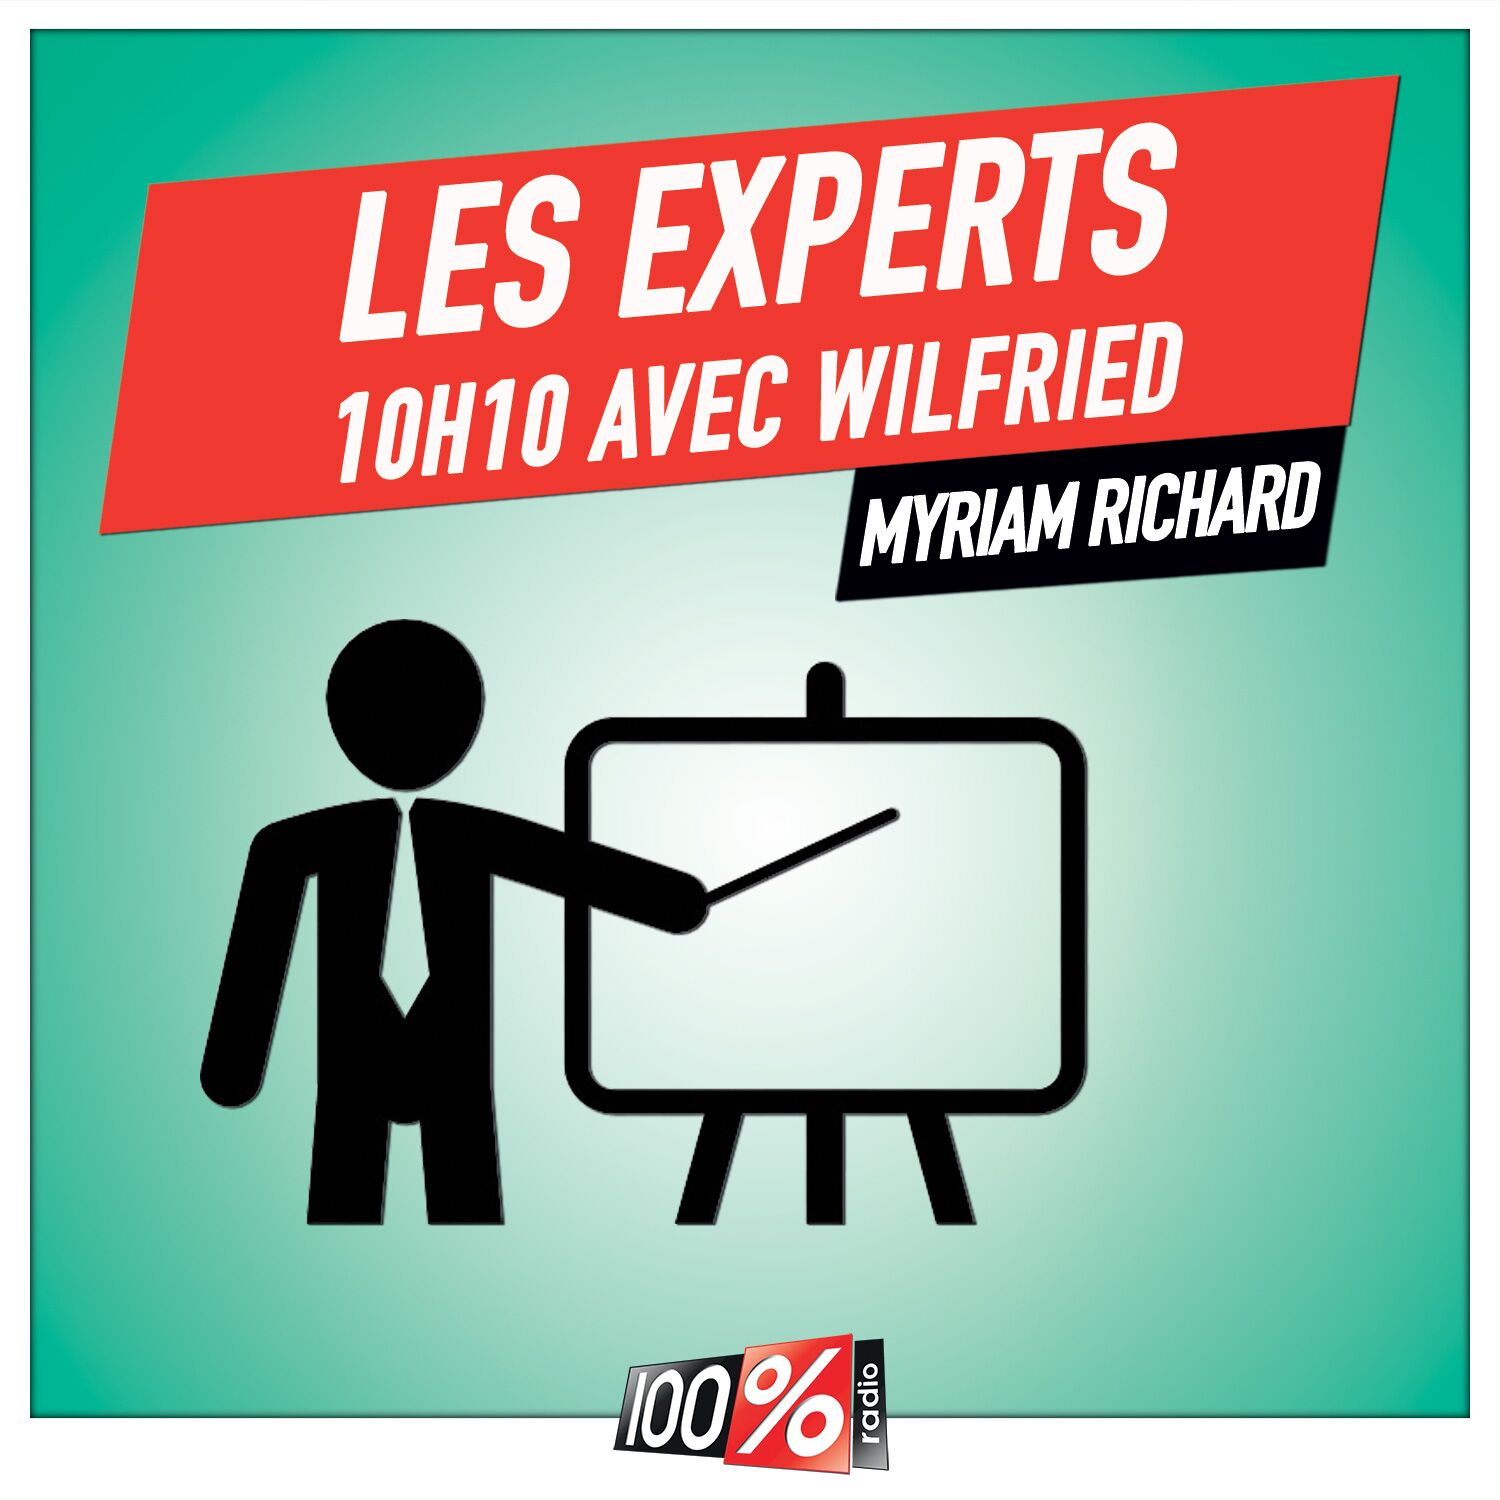 Les experts de Wilfried, Myriam Richard